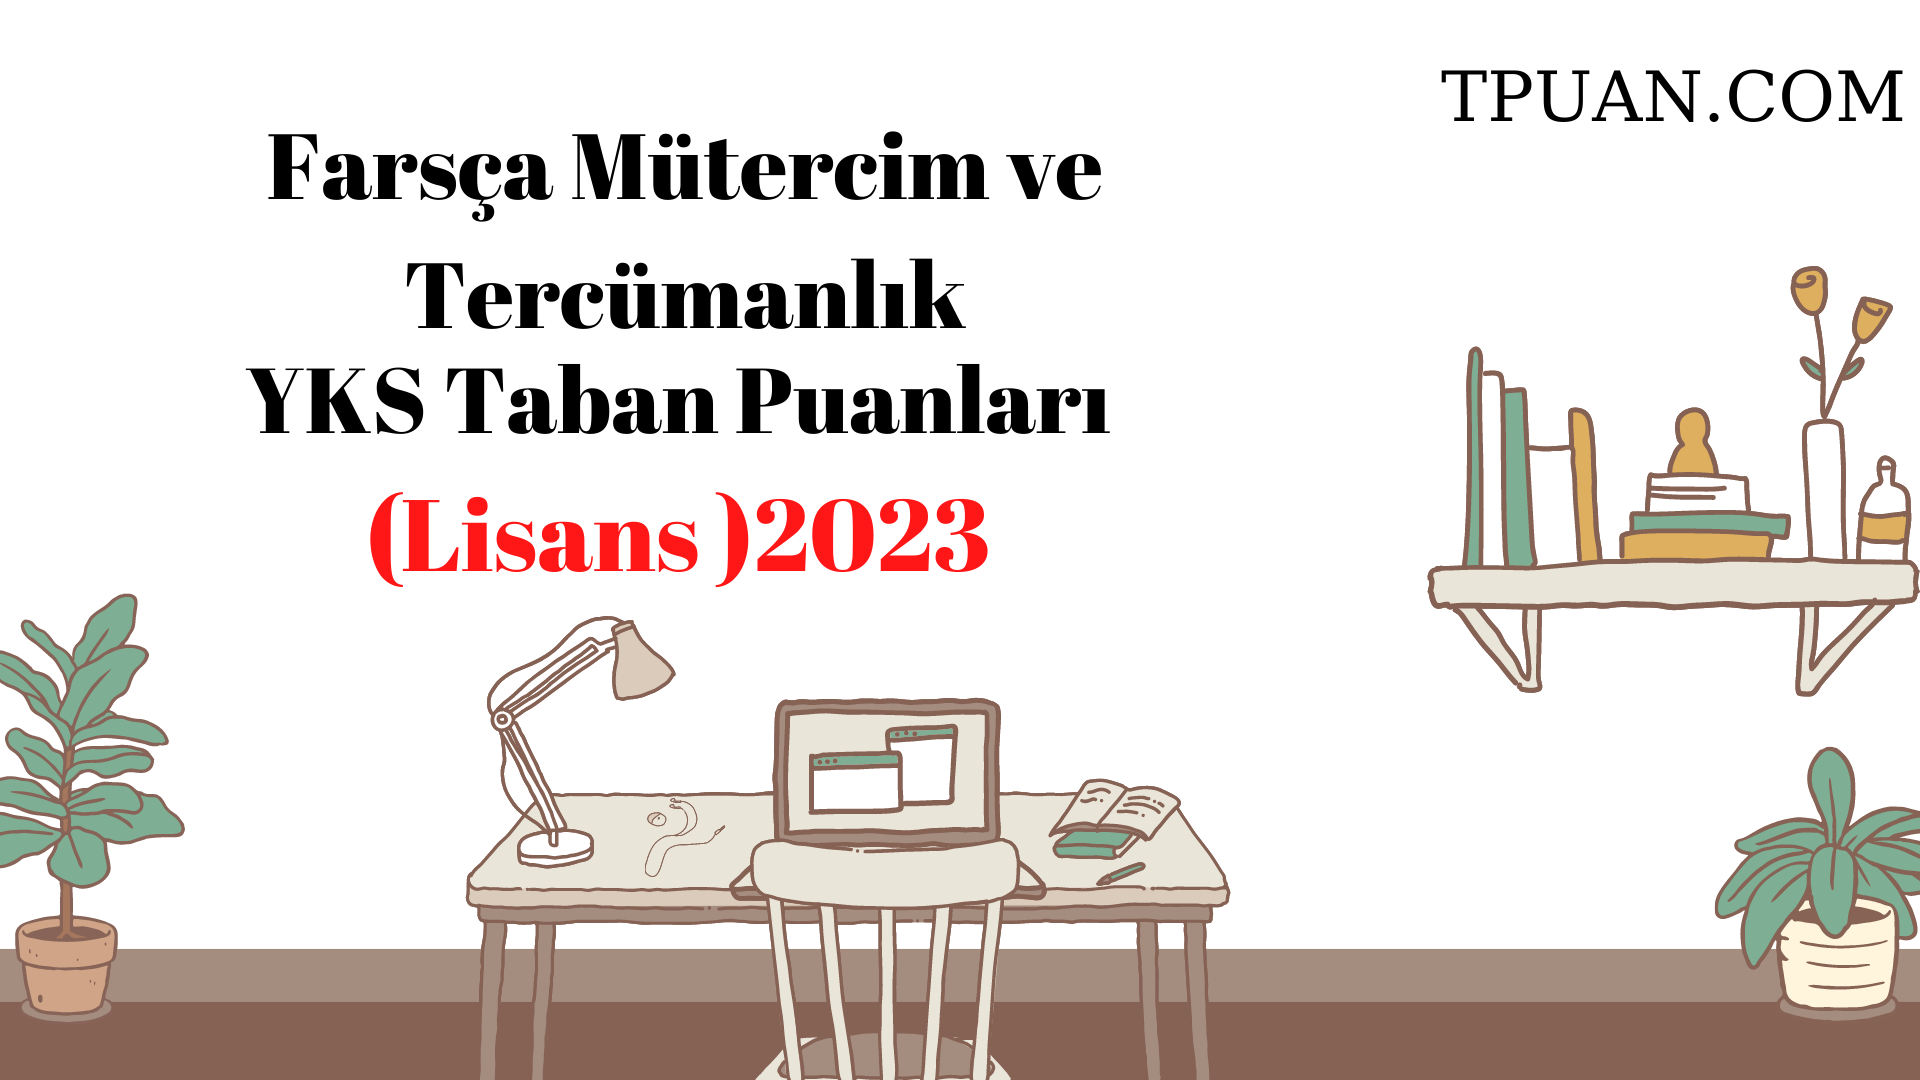  Farsça Mütercim ve Tercümanlık Bölümü YKS Taban Puanları (4 Yıllık) 2023